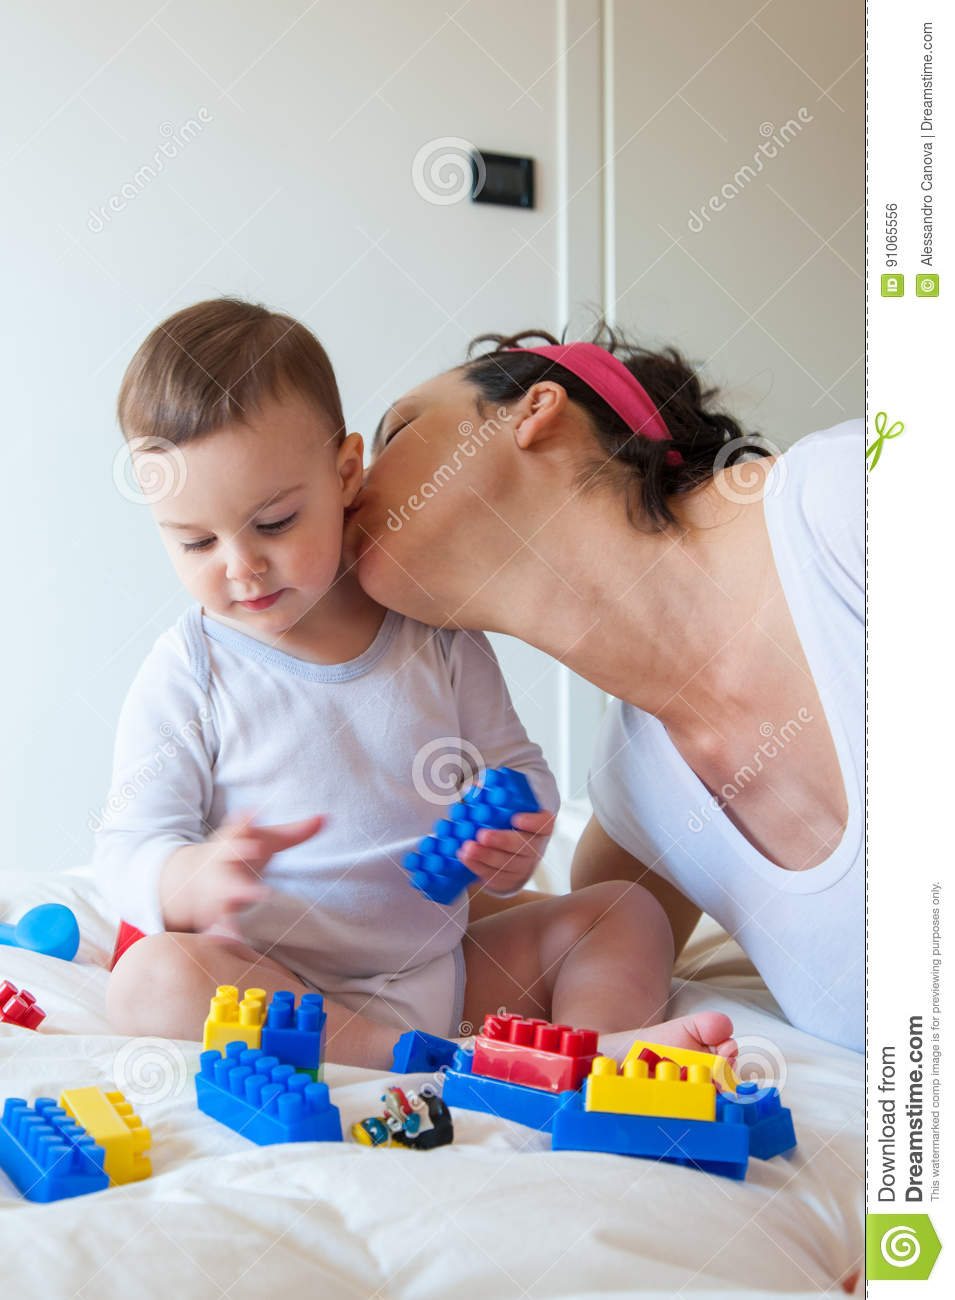 Jeux De Bébé Avec Des Briques De Lego Photo Stock - Image Du pour Brique Pour Bebe